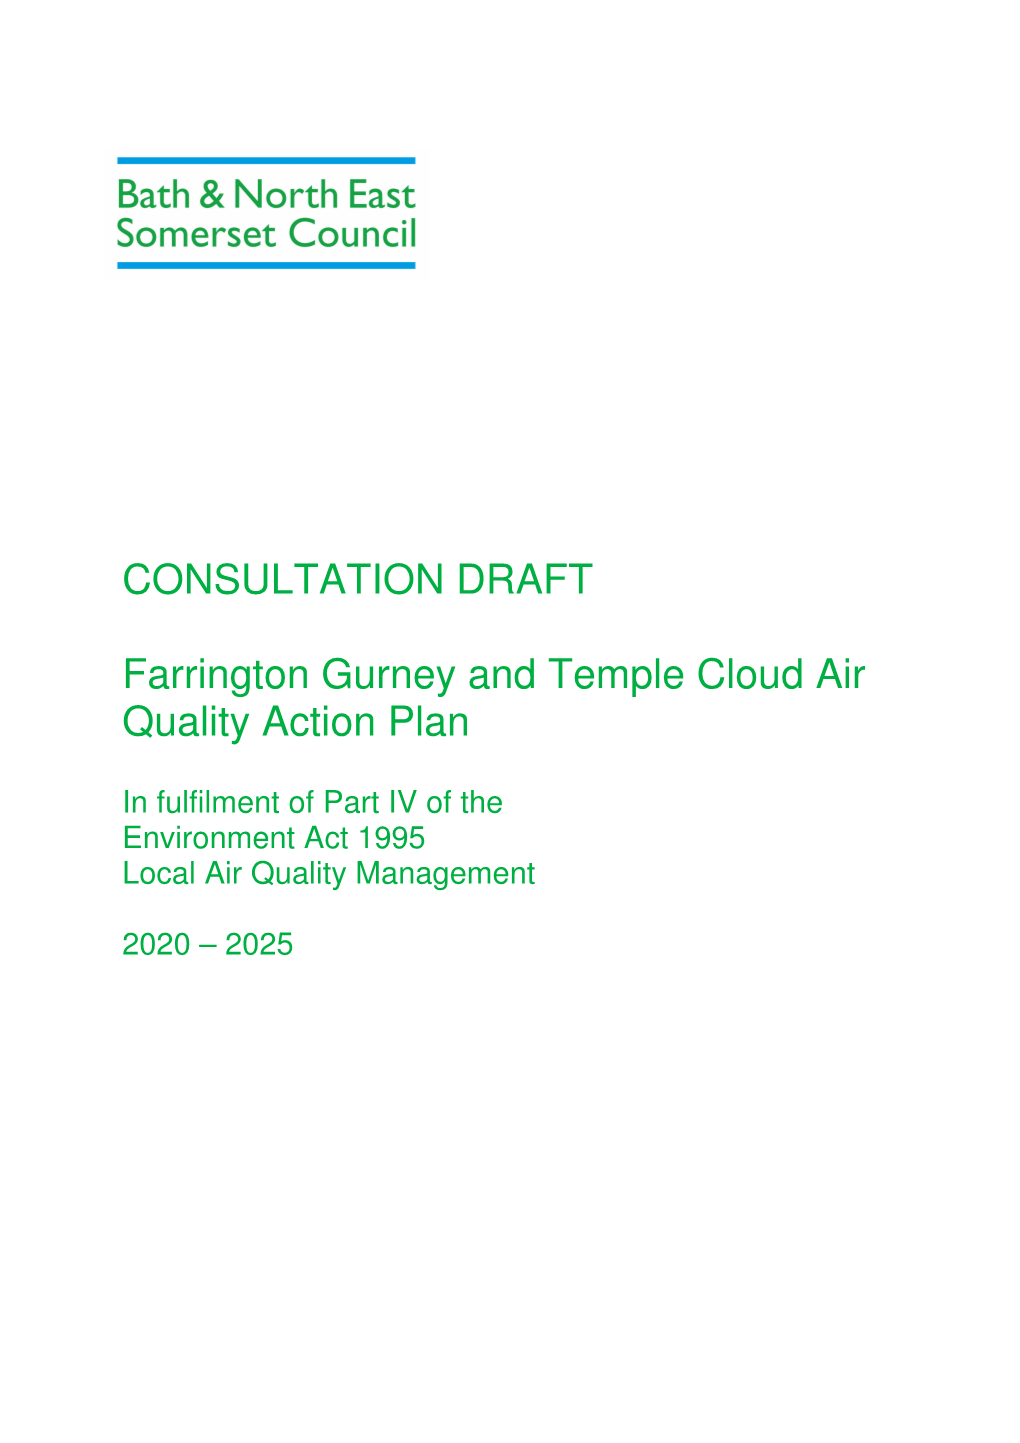 CONSULTATION DRAFT Farrington Gurney and Temple Cloud Air